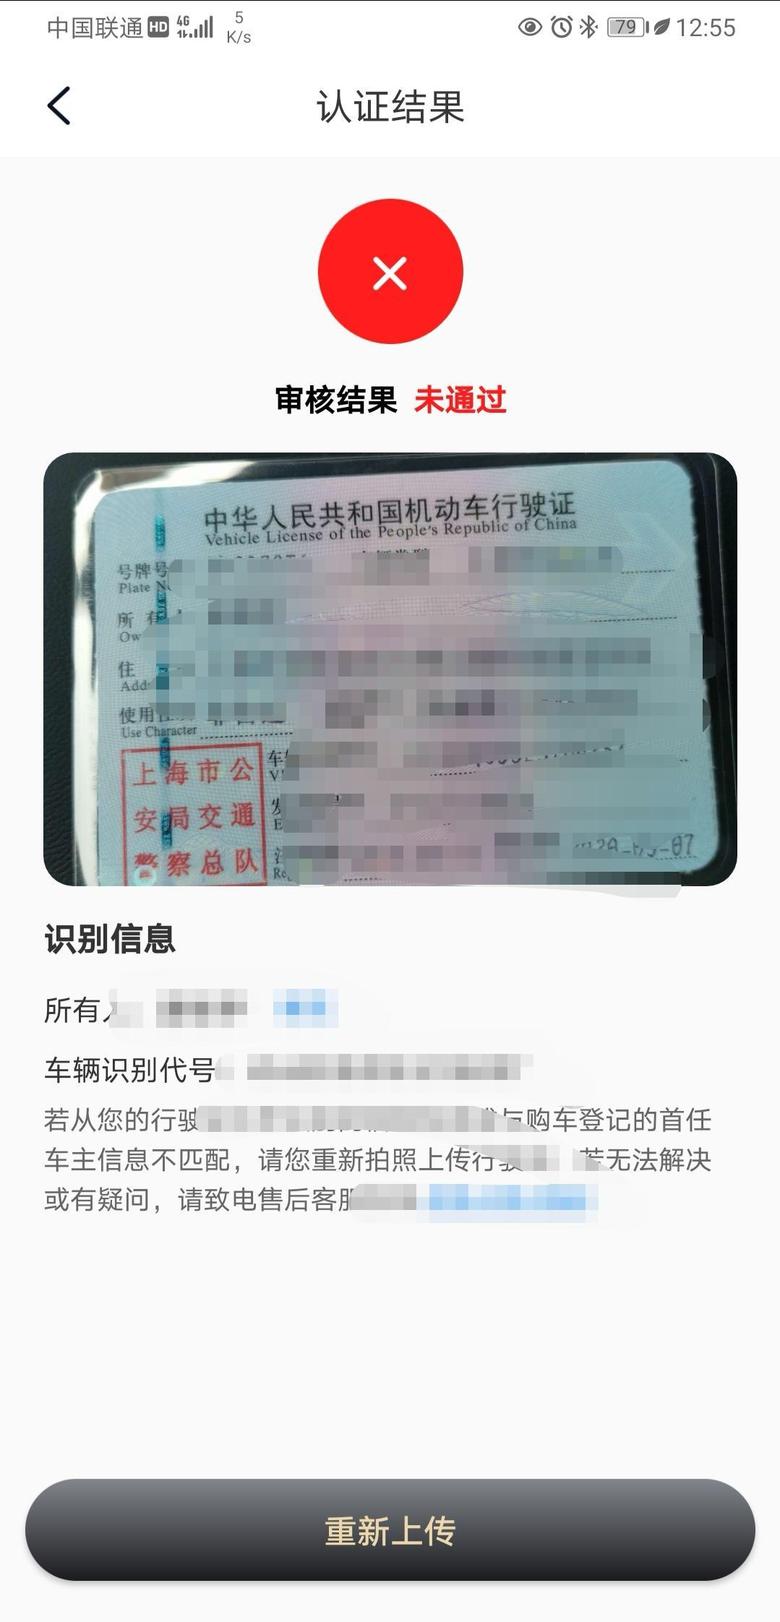 荣威rx5 RX5PLUS上传了行驶证认证直接未通过，问了客服说这是在认证，问下车友们一般认证要多久？